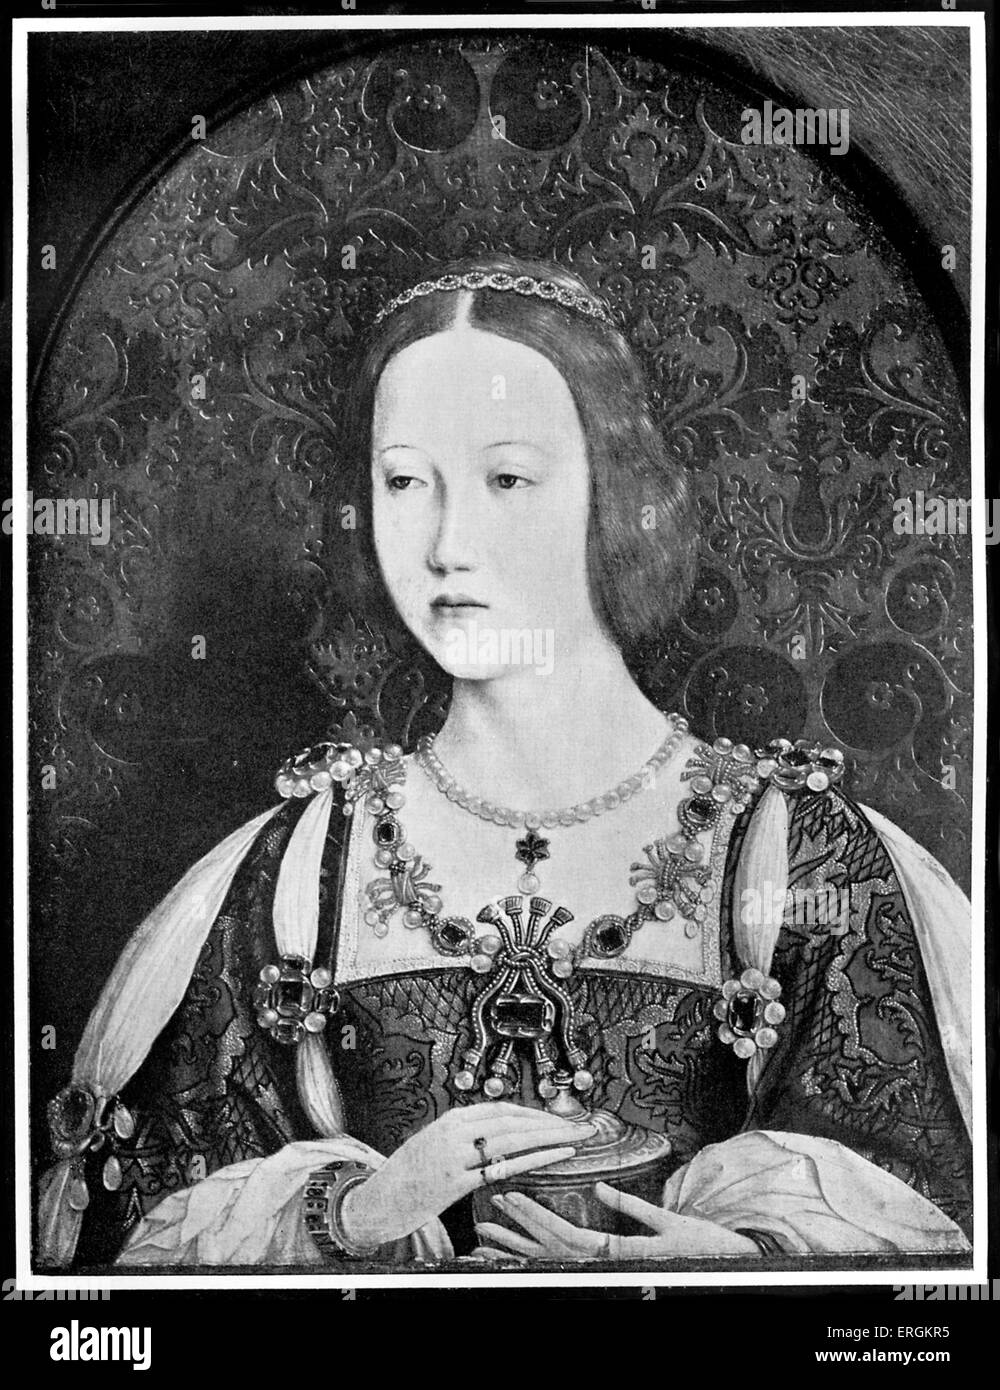 Prinzessin Mary Tudor (1496-1533). Königin-Gemahl von Frankreich für ein Jahr in 1514 nach ihrer Heirat mit Louis XII (1462-1515). Schwester von König Heinrich VIII. von England (1491-1547). Porträt von Jehan Perreal (ca. 1450-1530) im Jahre 1514. Stockfoto